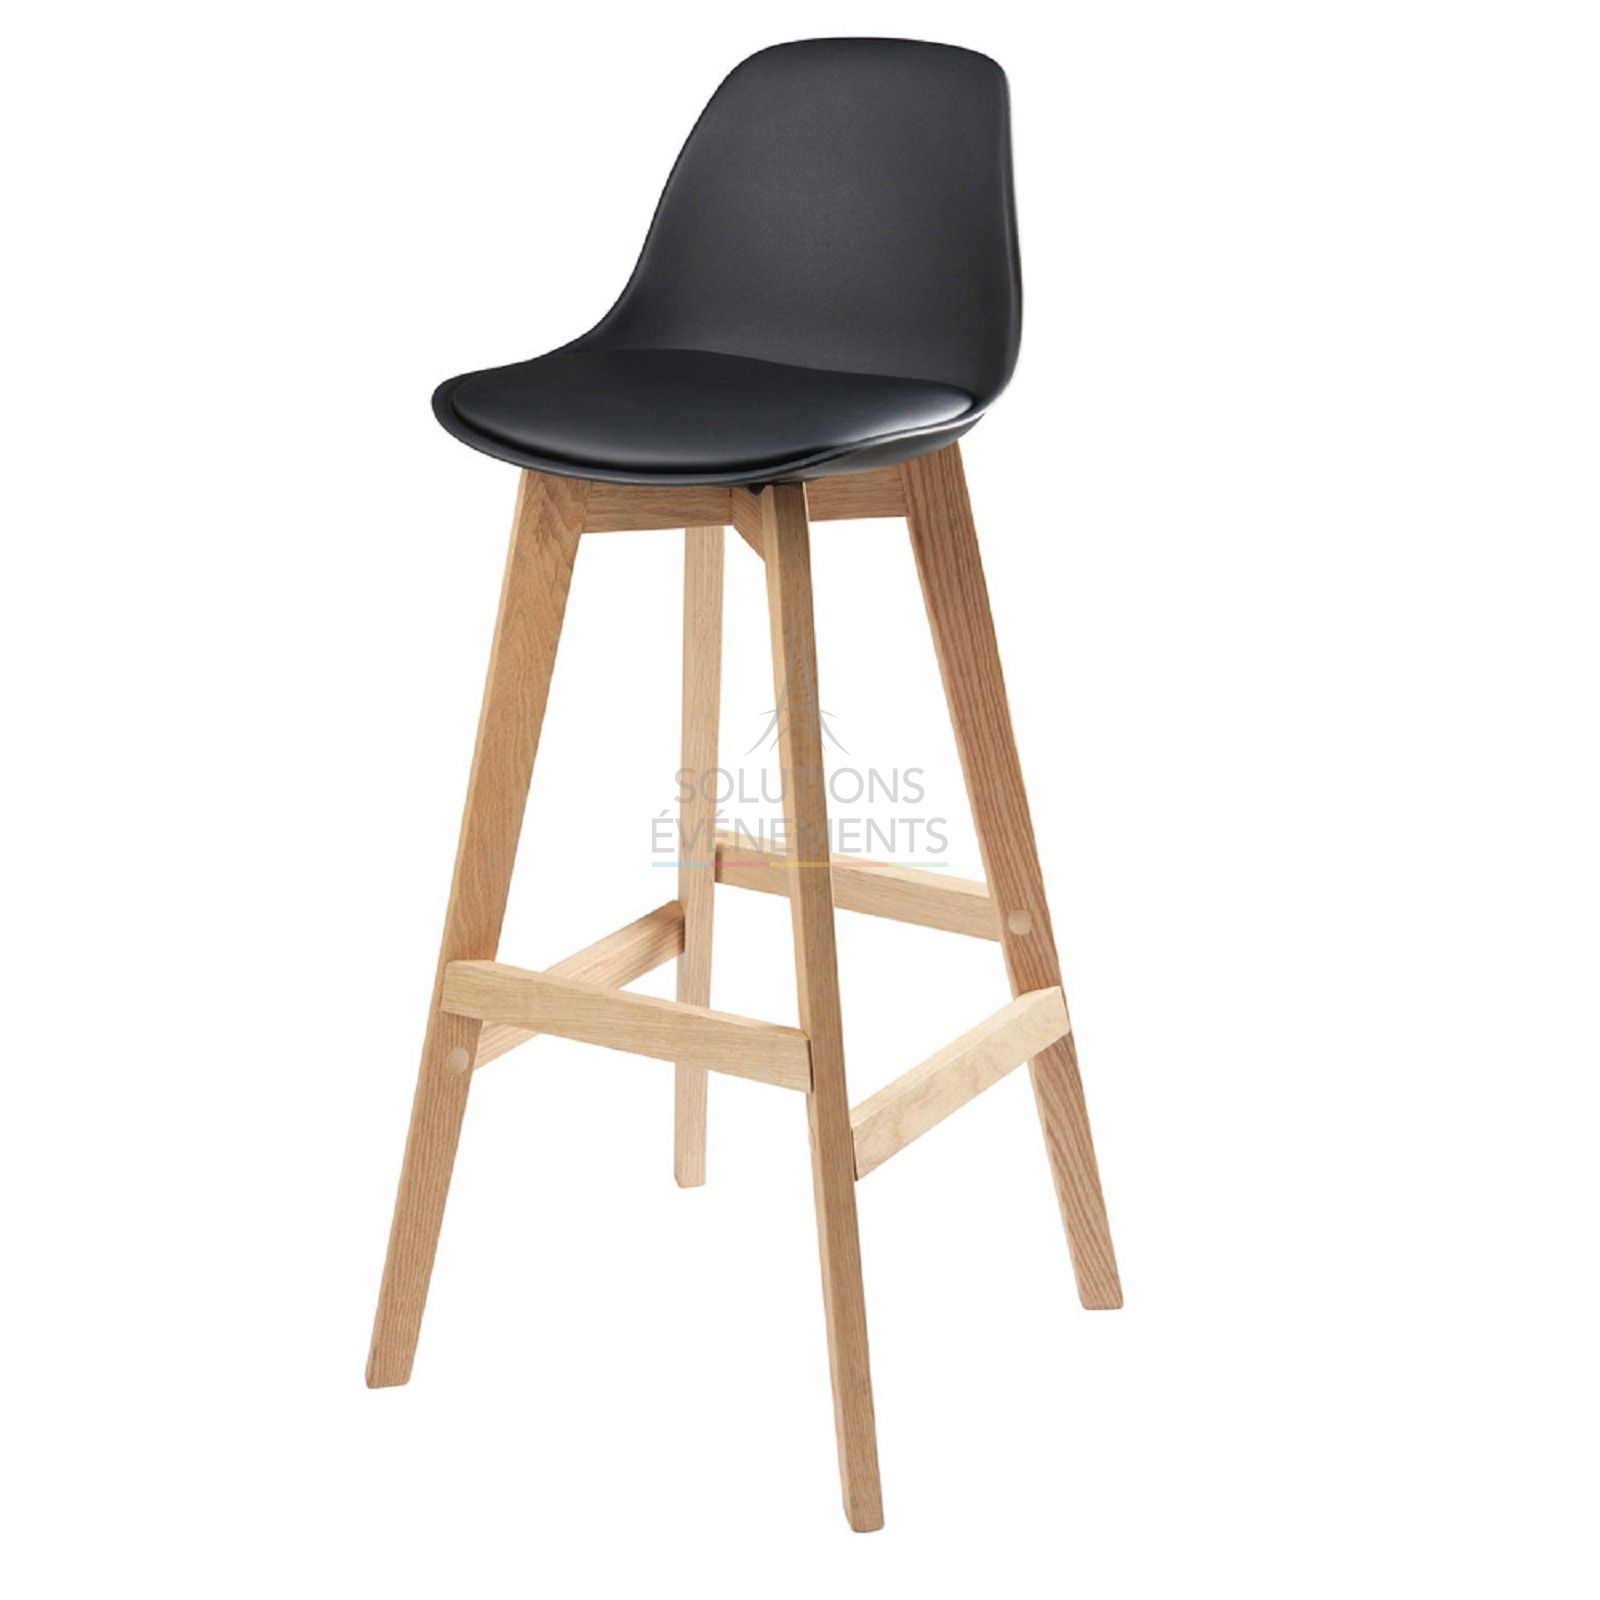 Scandinavian high chair rental